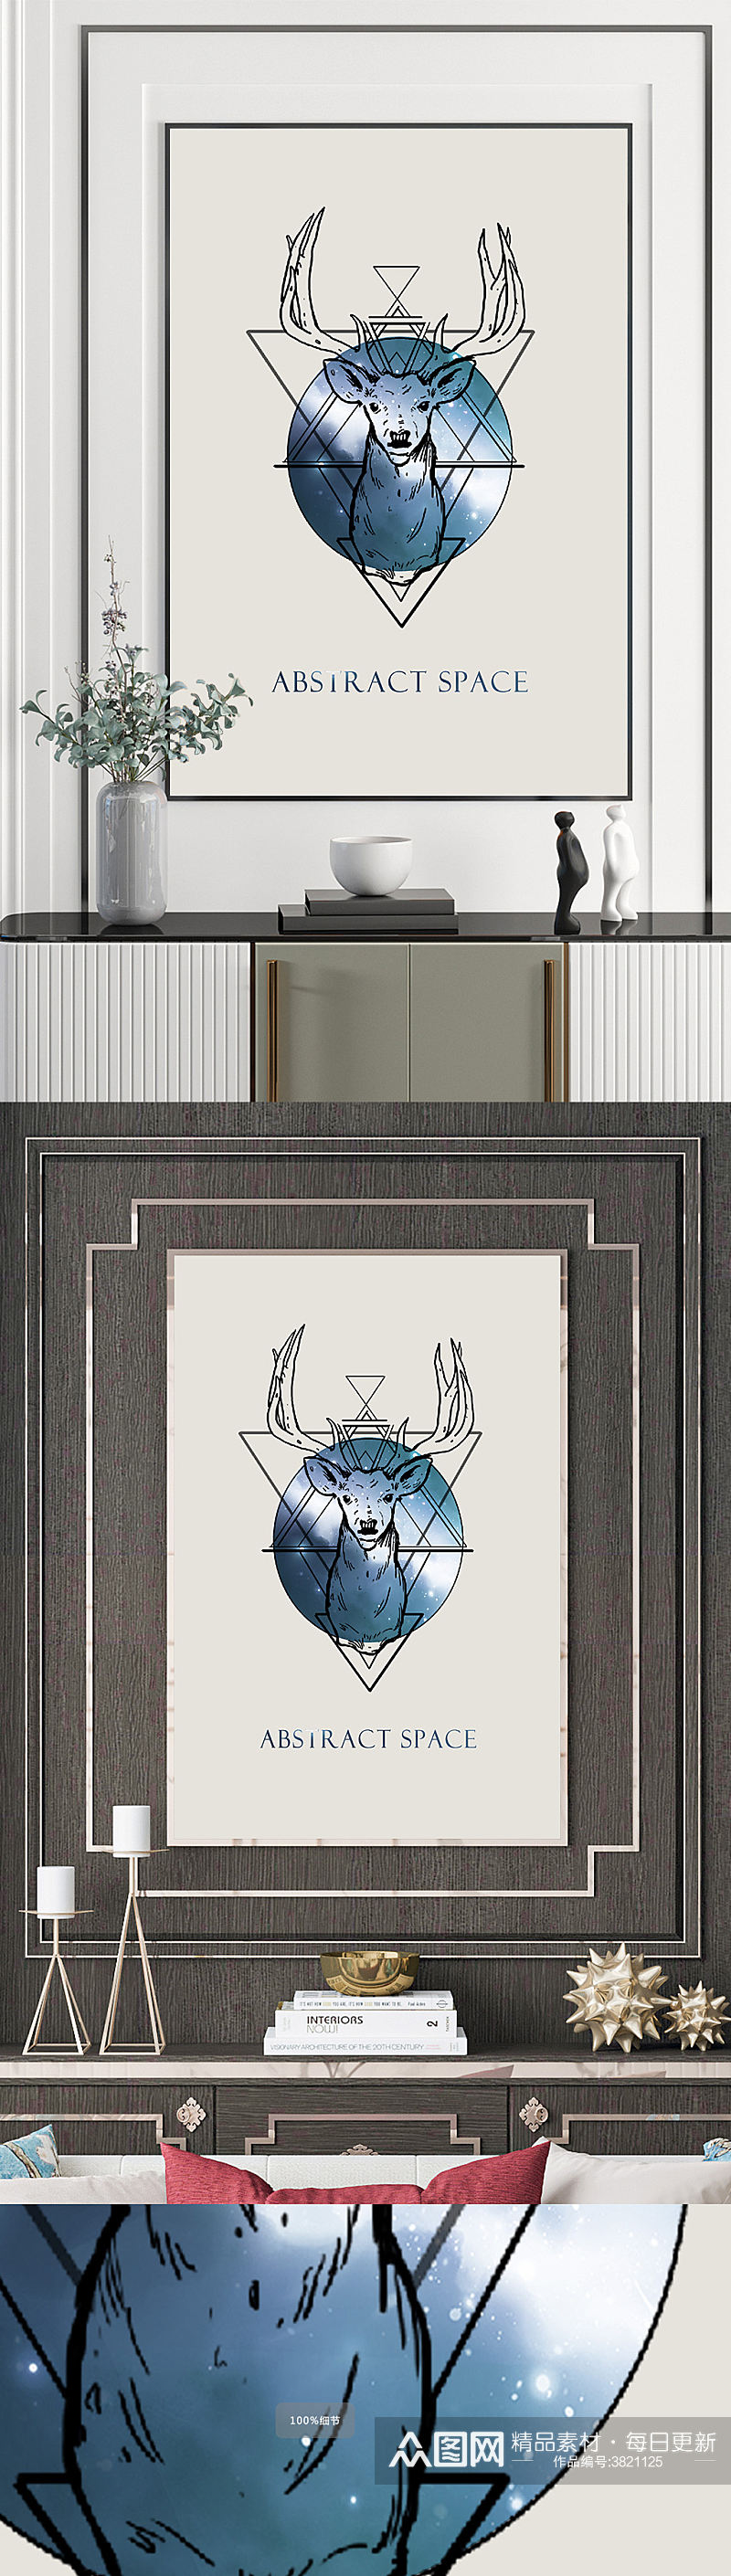 欧式手绘麋鹿图案装饰画素材